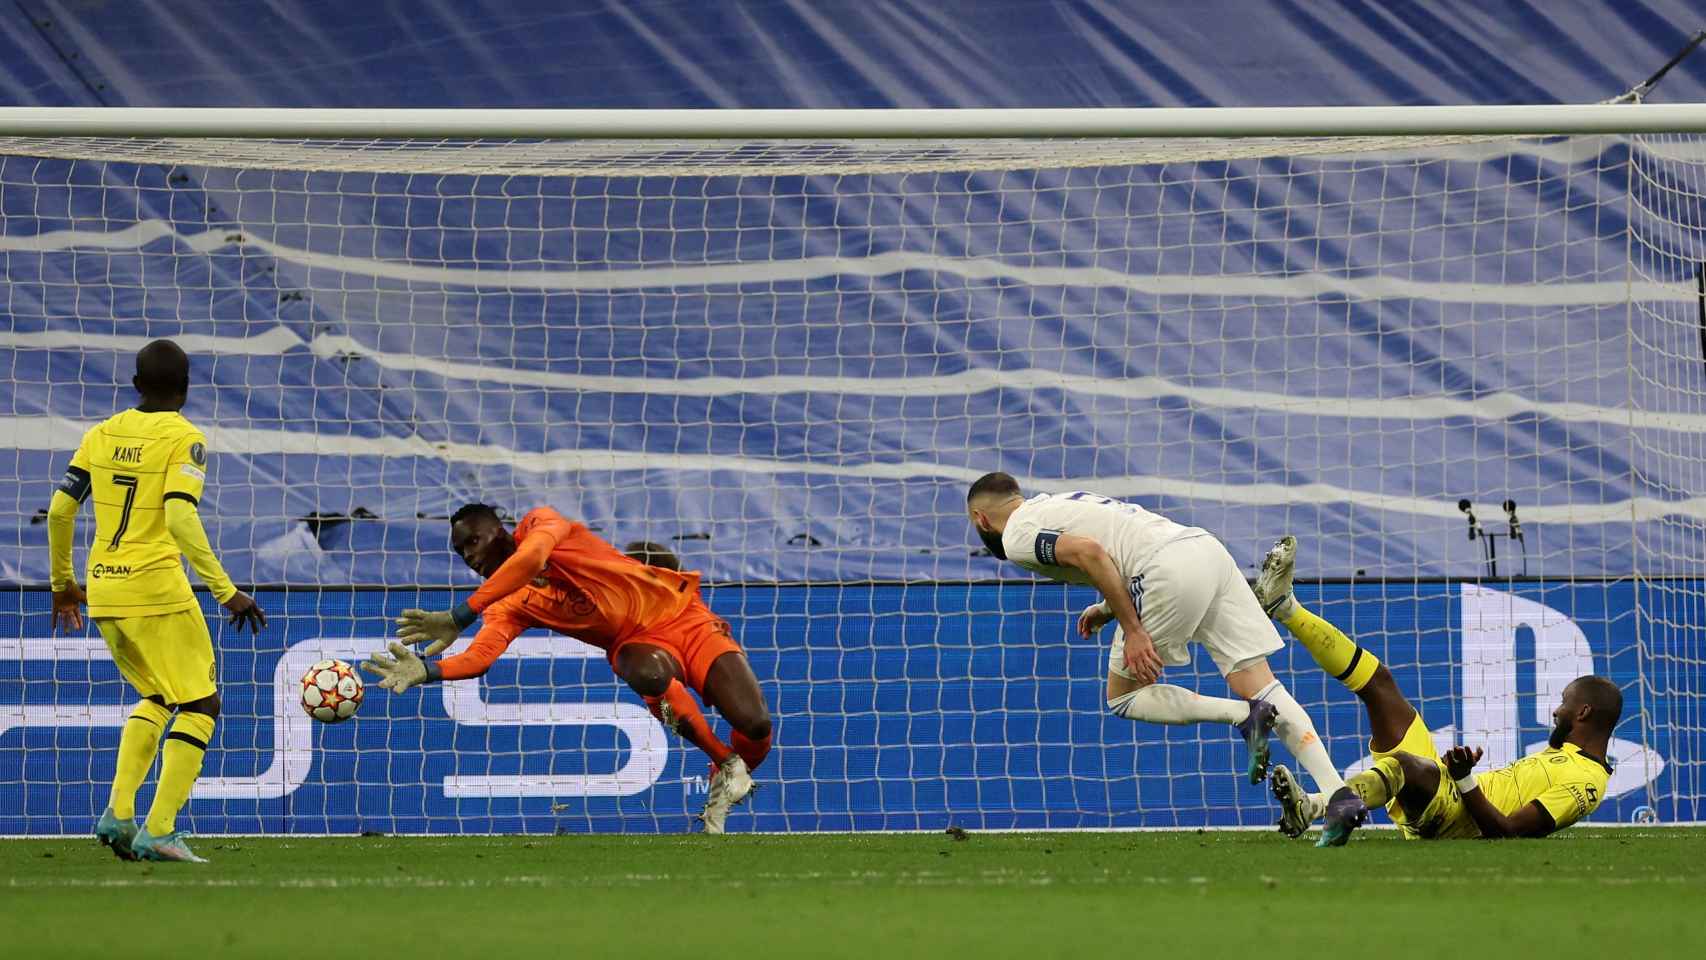 Karim Benzema remata de cabeza y marca el segundo gol del Real Madrid al Chelsea